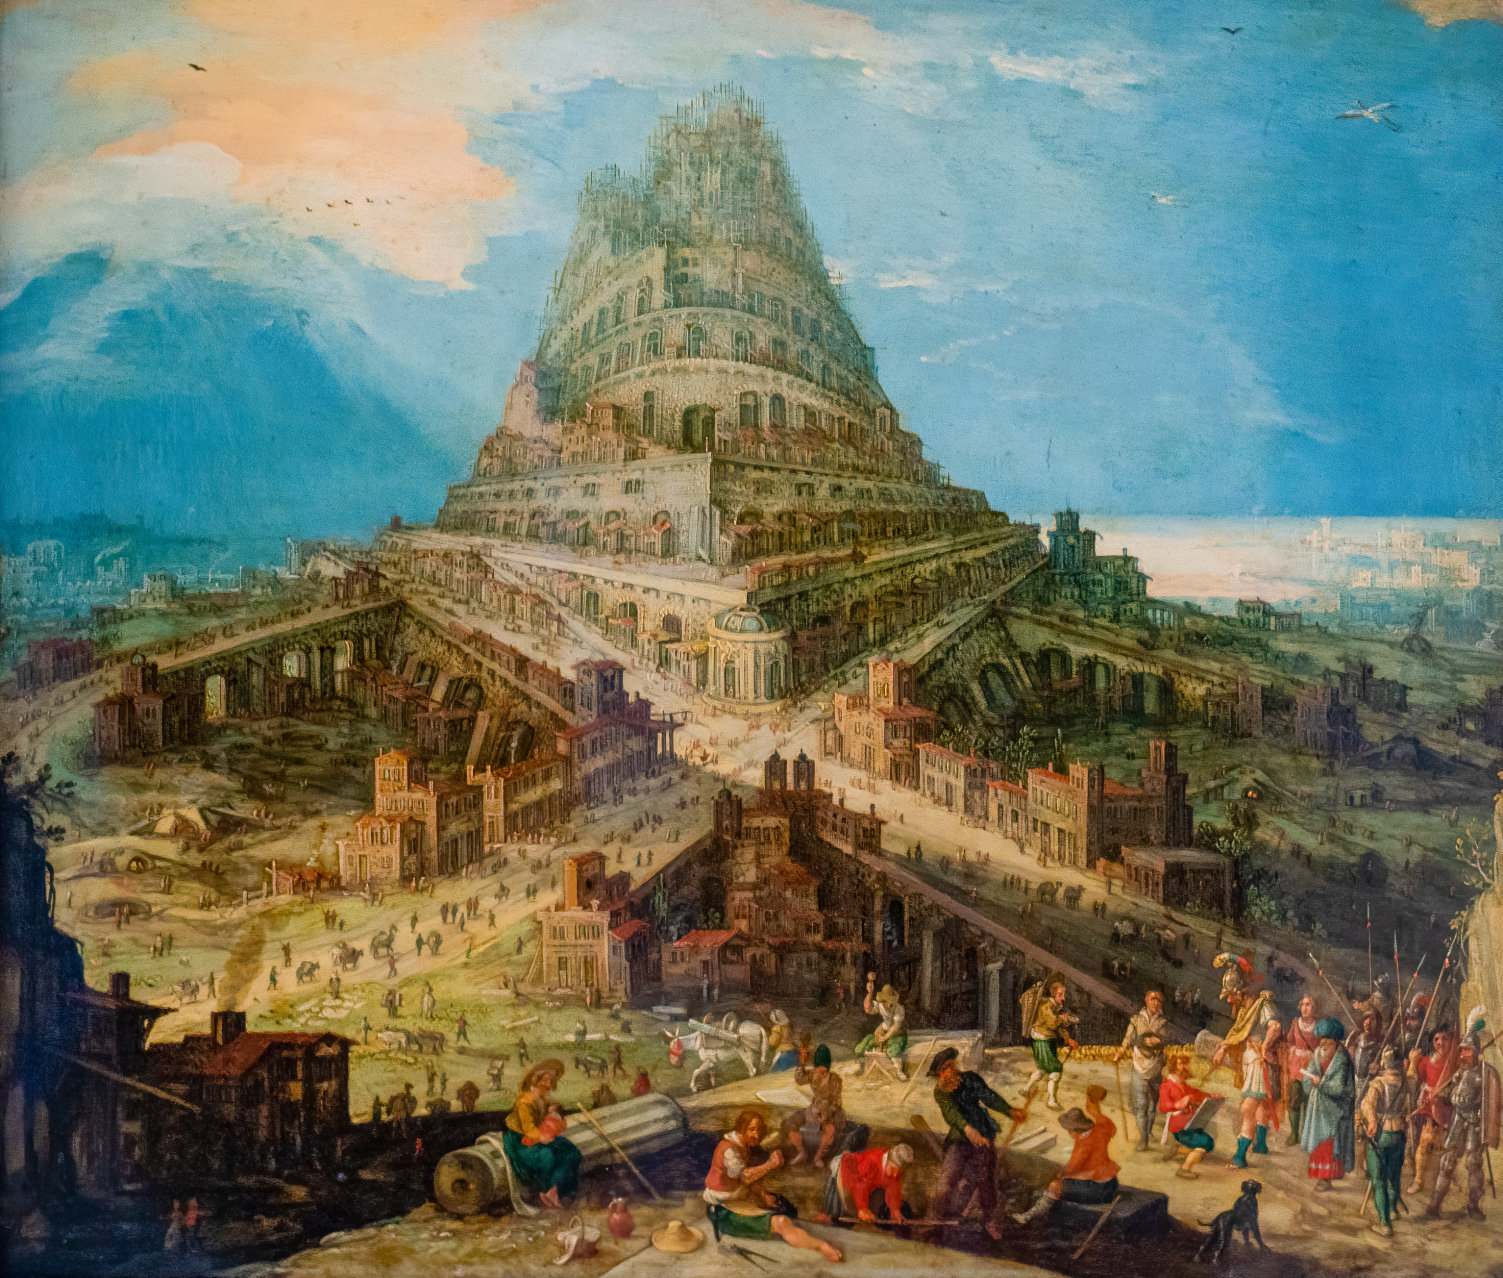 Det första beviset på det bibliska tornet i Babel upptäcktes 2